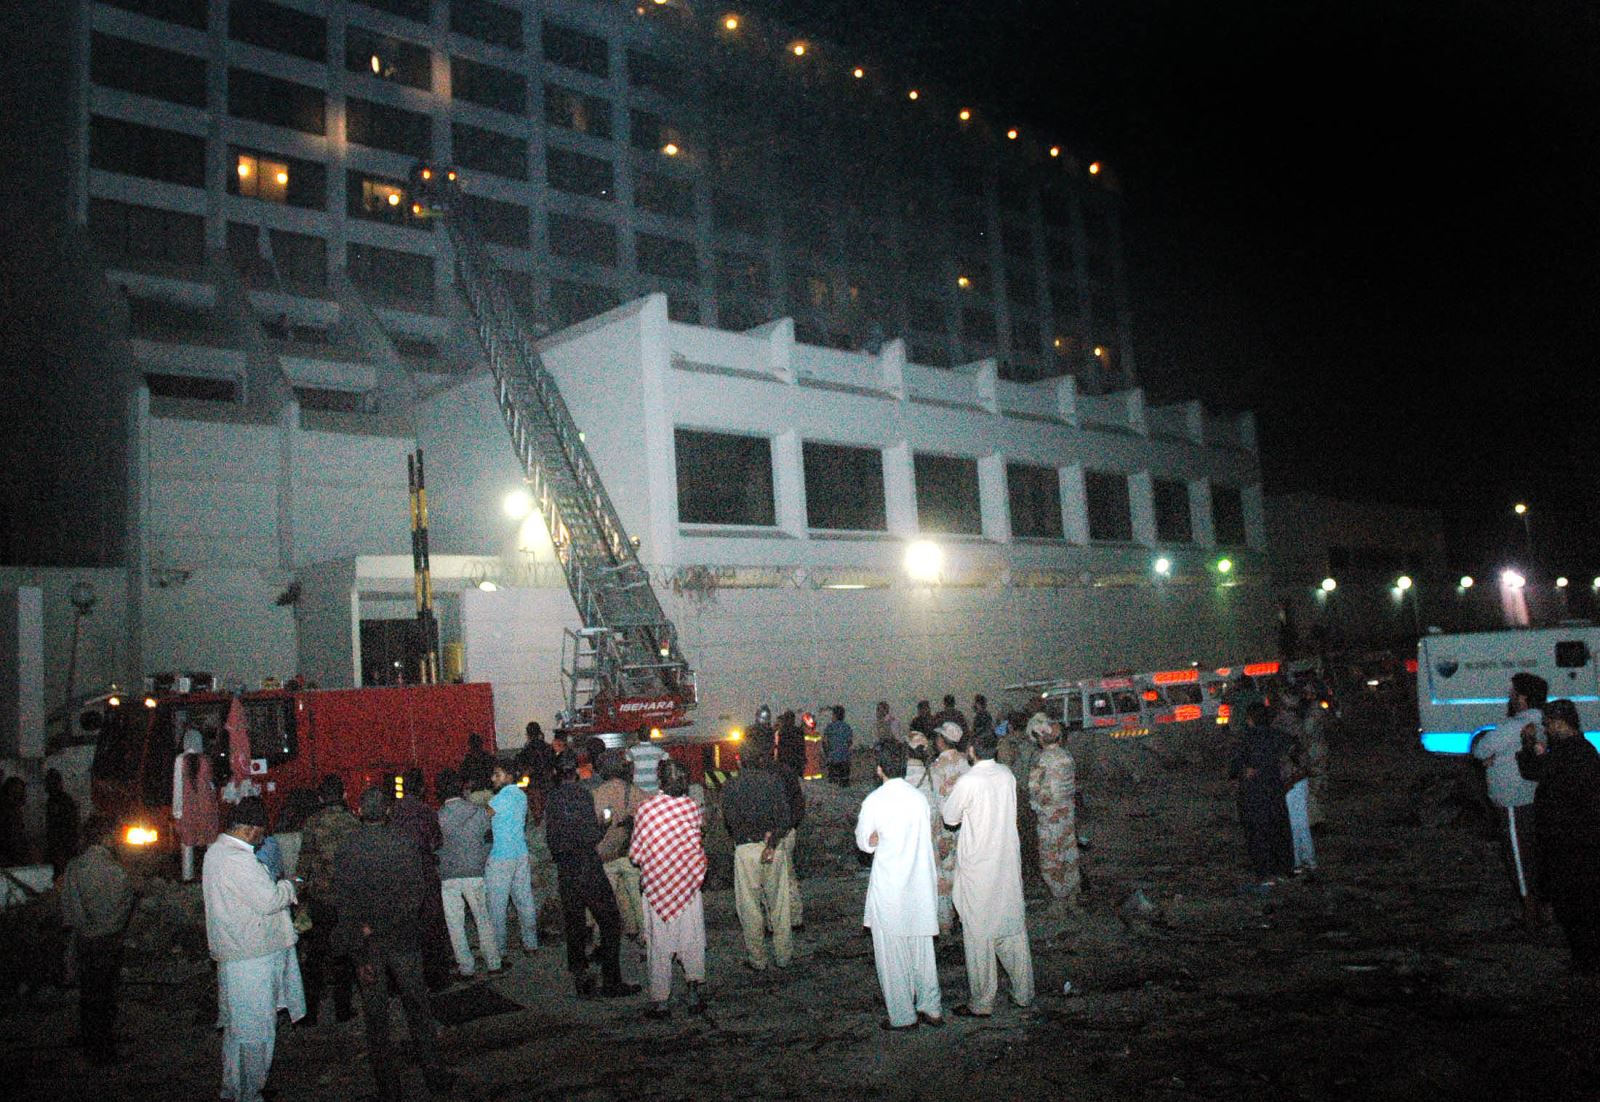 11 die, 30 others injured in Karachi hotel fire